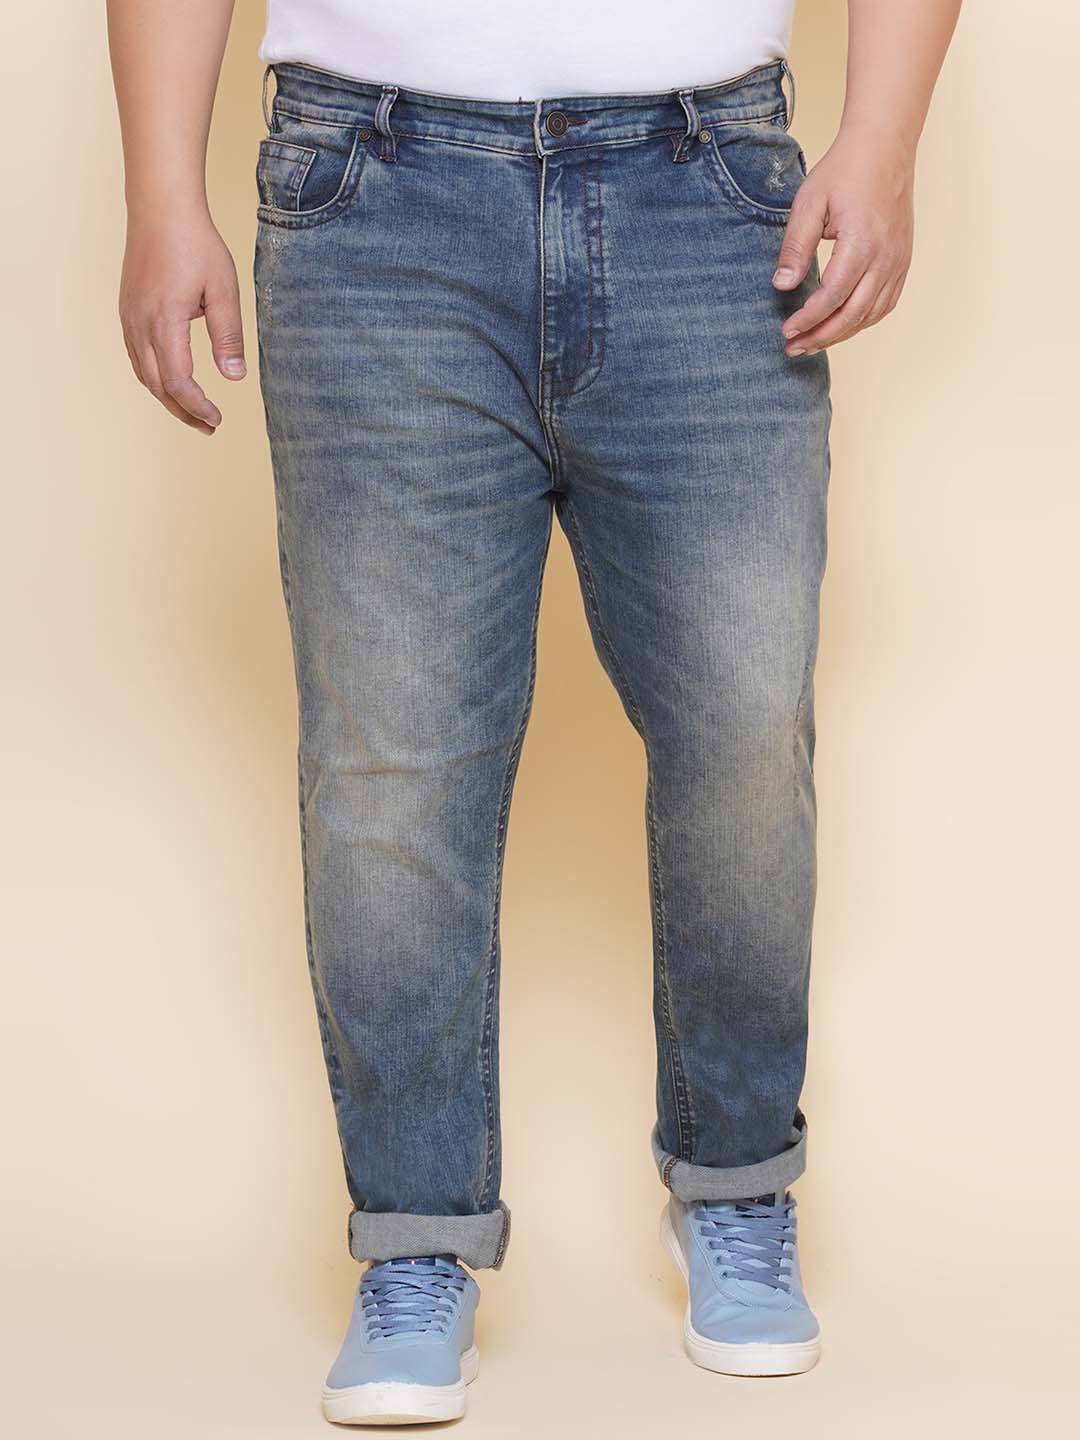 bottomwear/jeans/PJPJ60114/pjpj60114-1.jpg